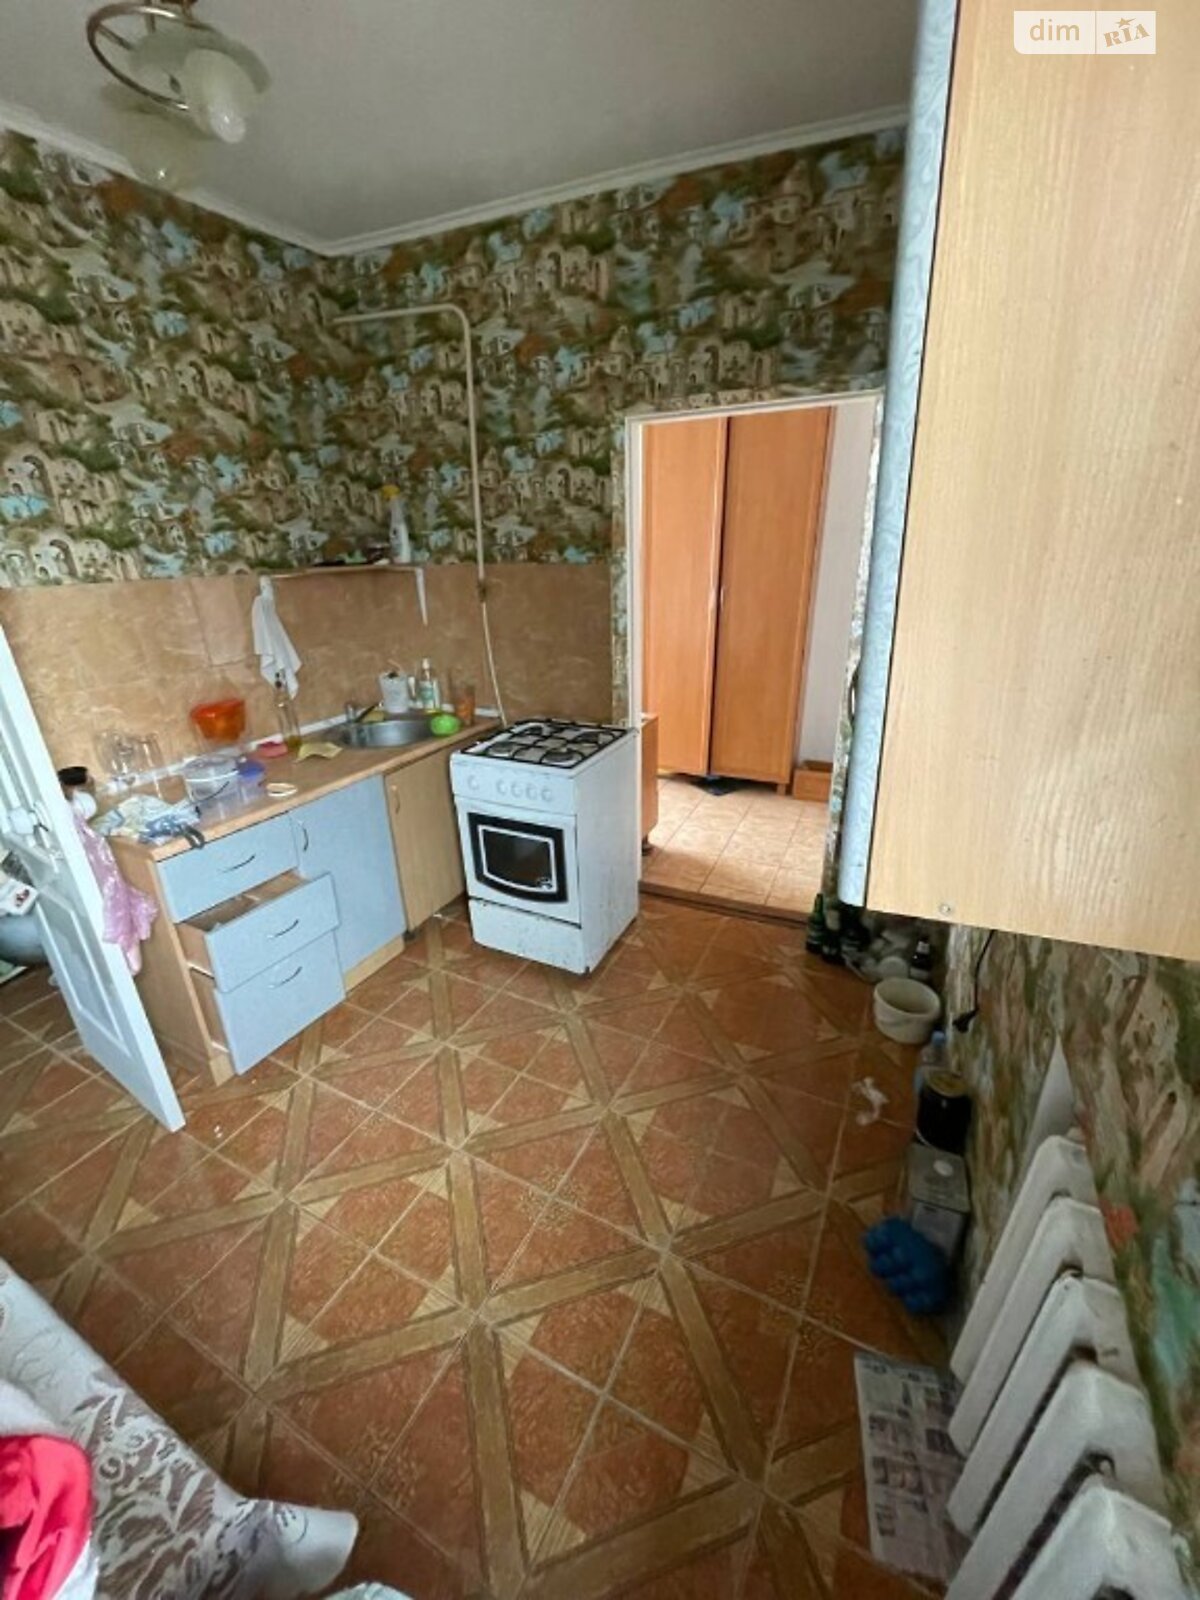 Продажа части дома в Николаеве, улица Малая Морская, район Заводской, 3 комнаты фото 1